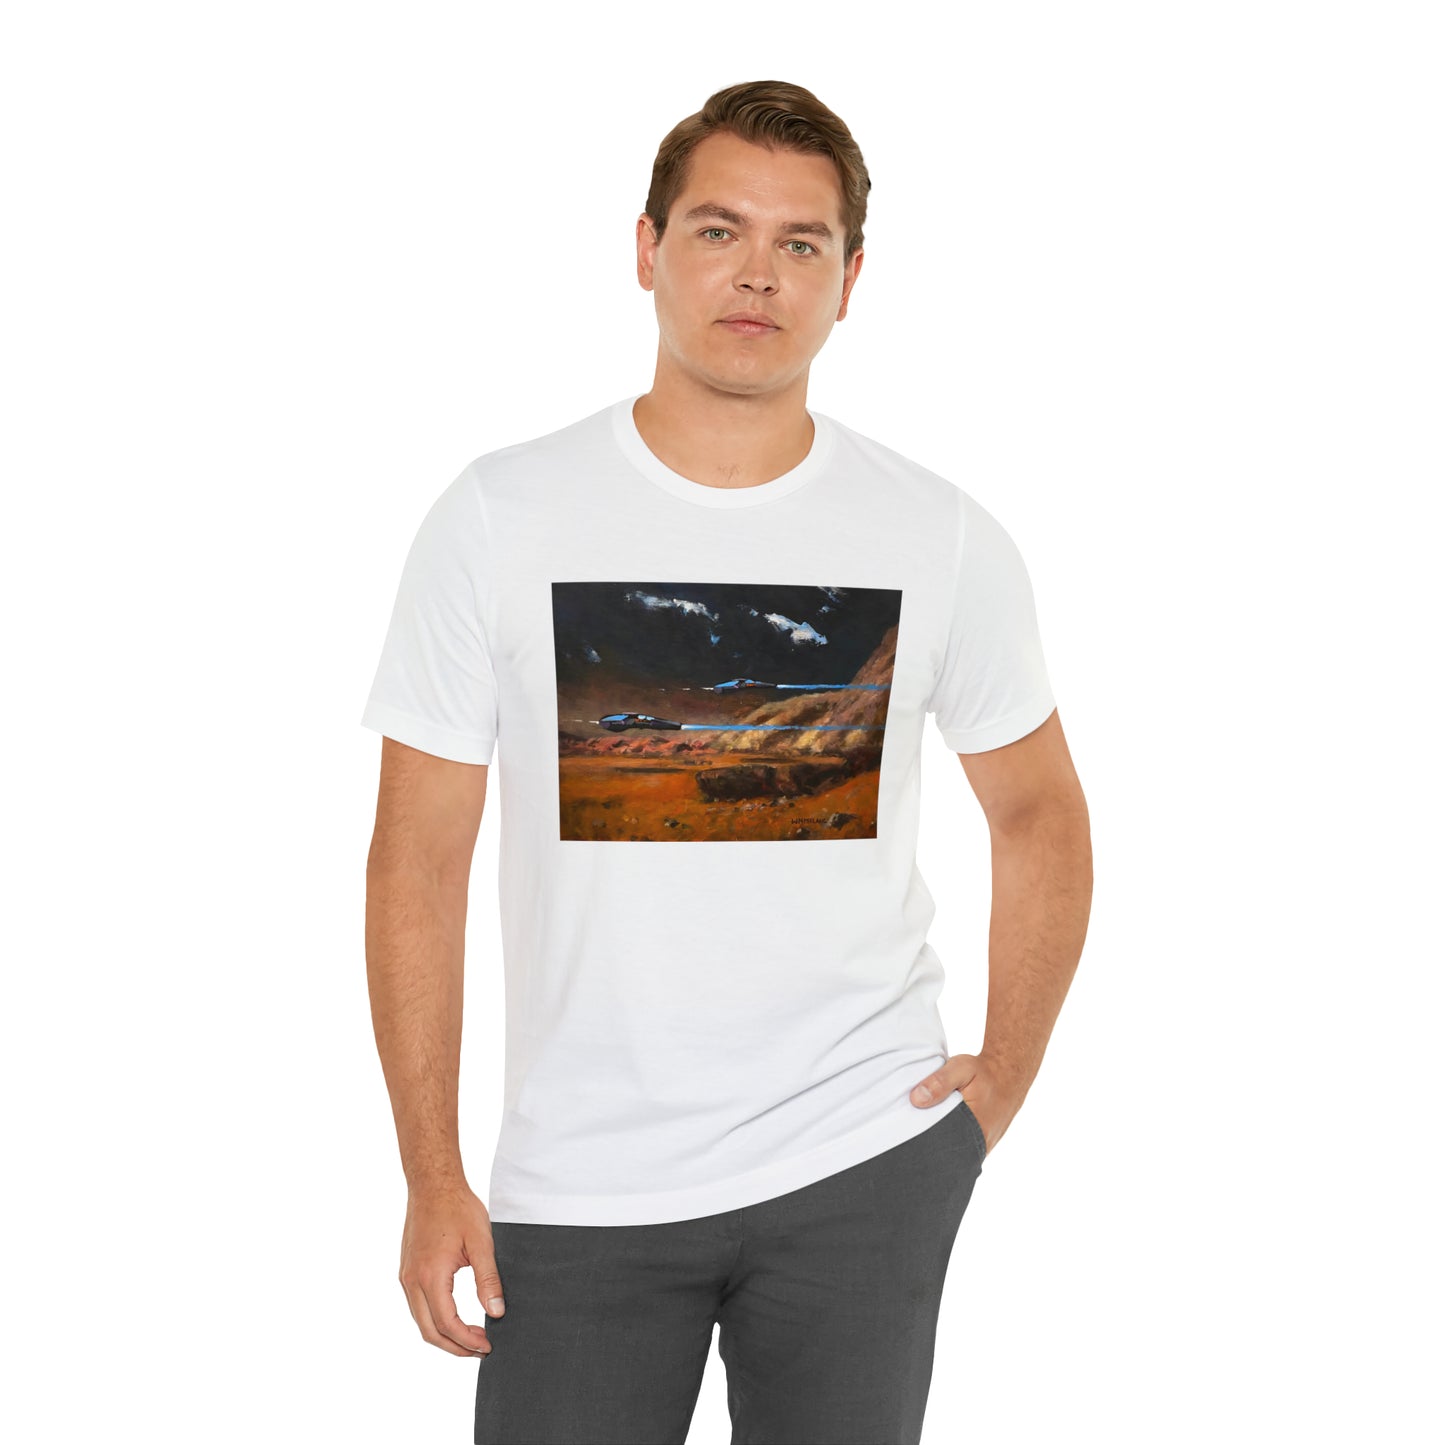 Perimeter Patrol, Mars T-Shirt